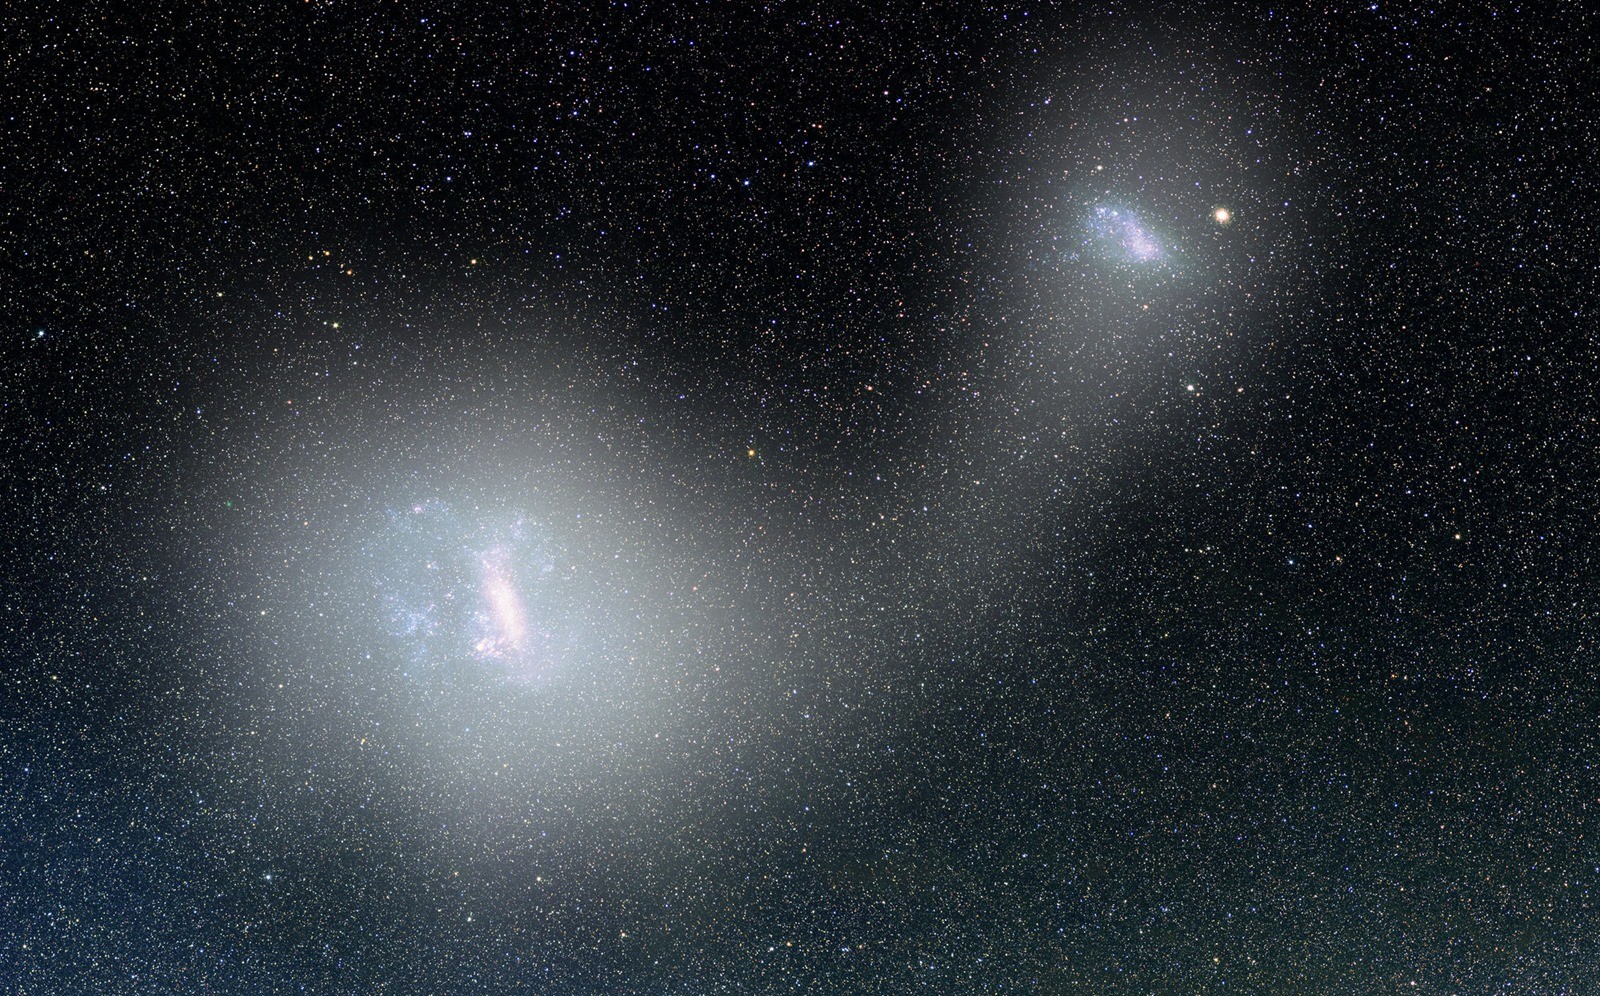 Un pont d’étoiles long de 43 000 années-lumière relie deux galaxies naines proches